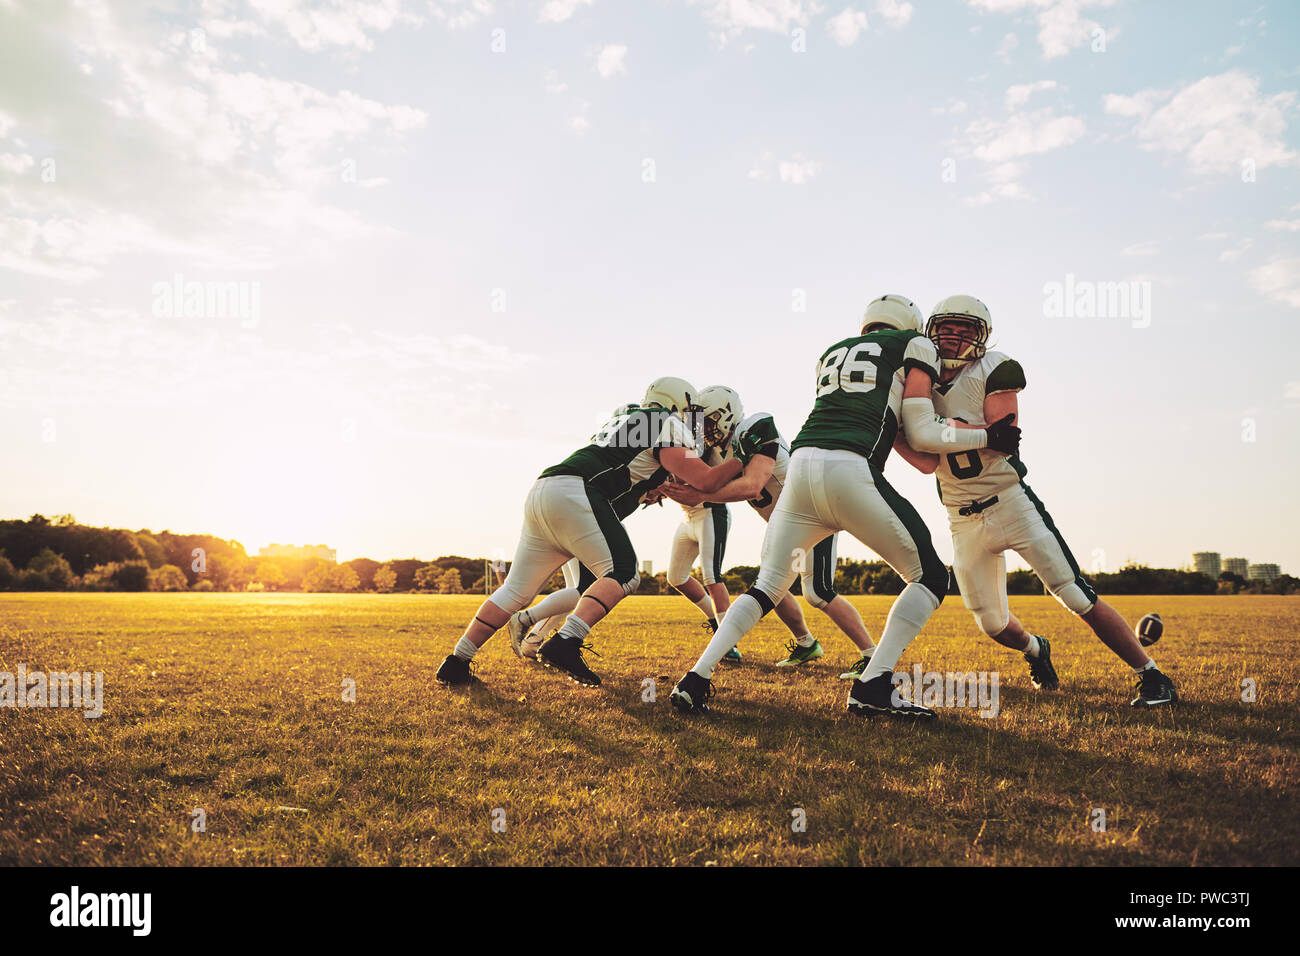 Grupo de jóvenes jugadores de fútbol americano practicando ejercicios ofensivos y defensivos en un campo de deportes en una tarde soleada Foto de stock